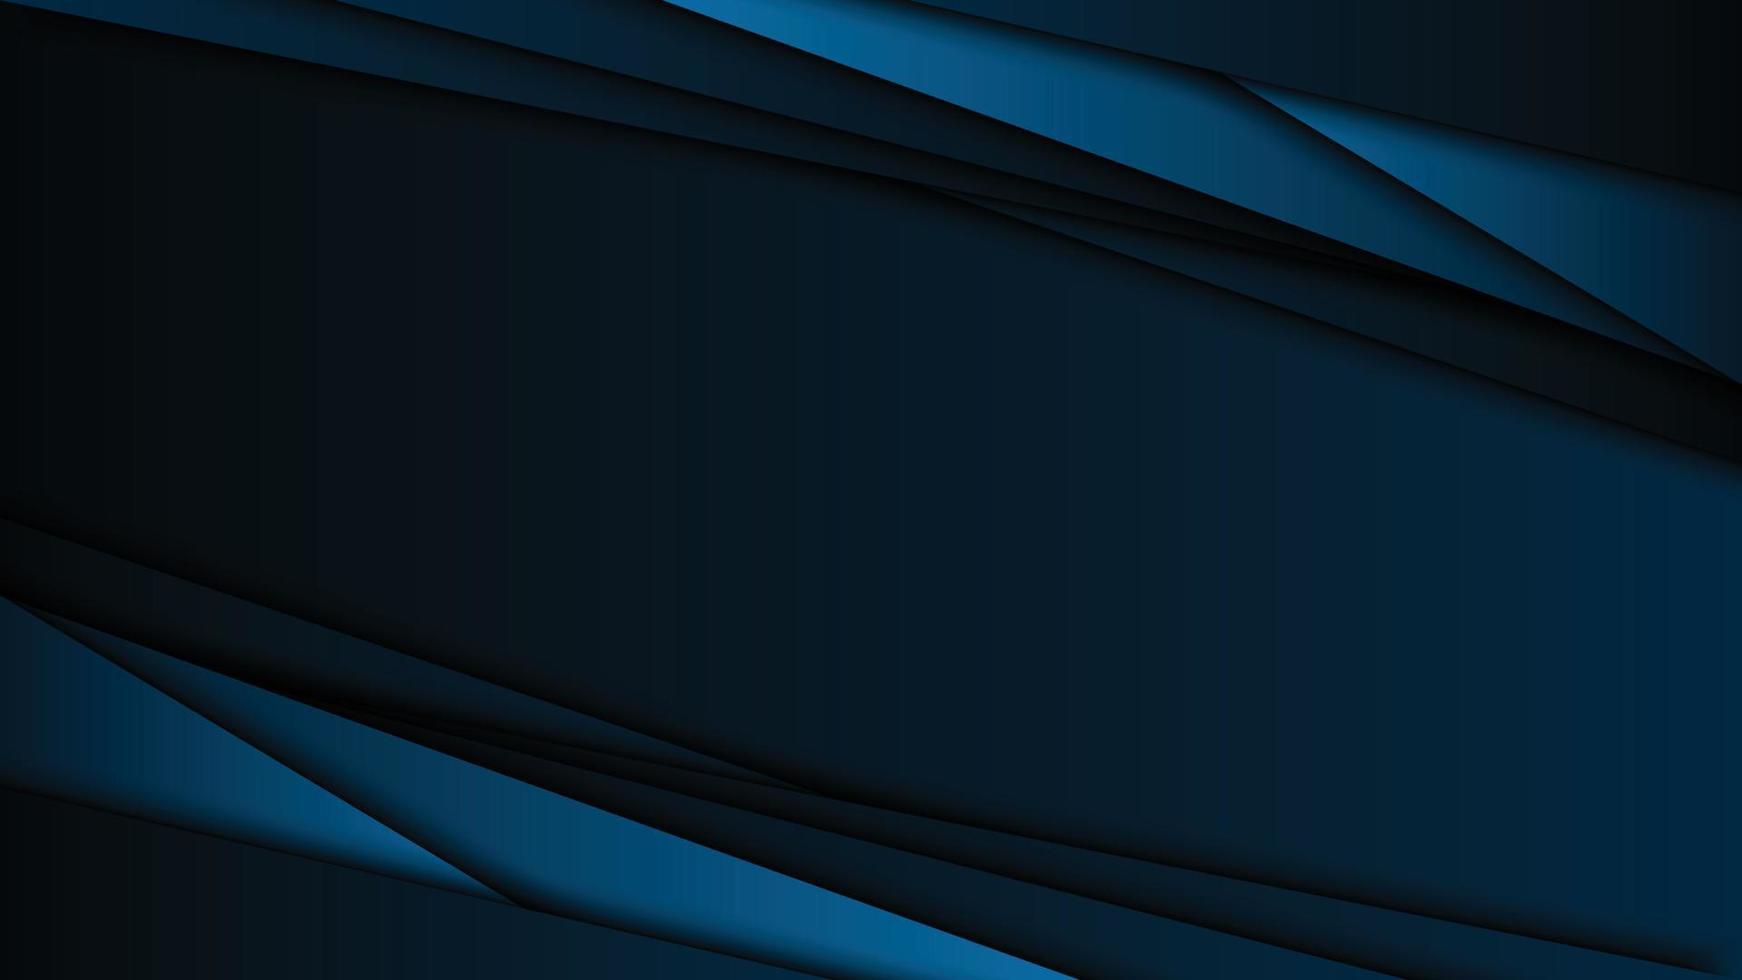 fundo azul marinho moderno com estilo abstrato. design de ilustração vetorial para apresentação, banner, capa, web, flyer, cartão, pôster, papel de parede, textura, slide, revista e powerpoint vetor